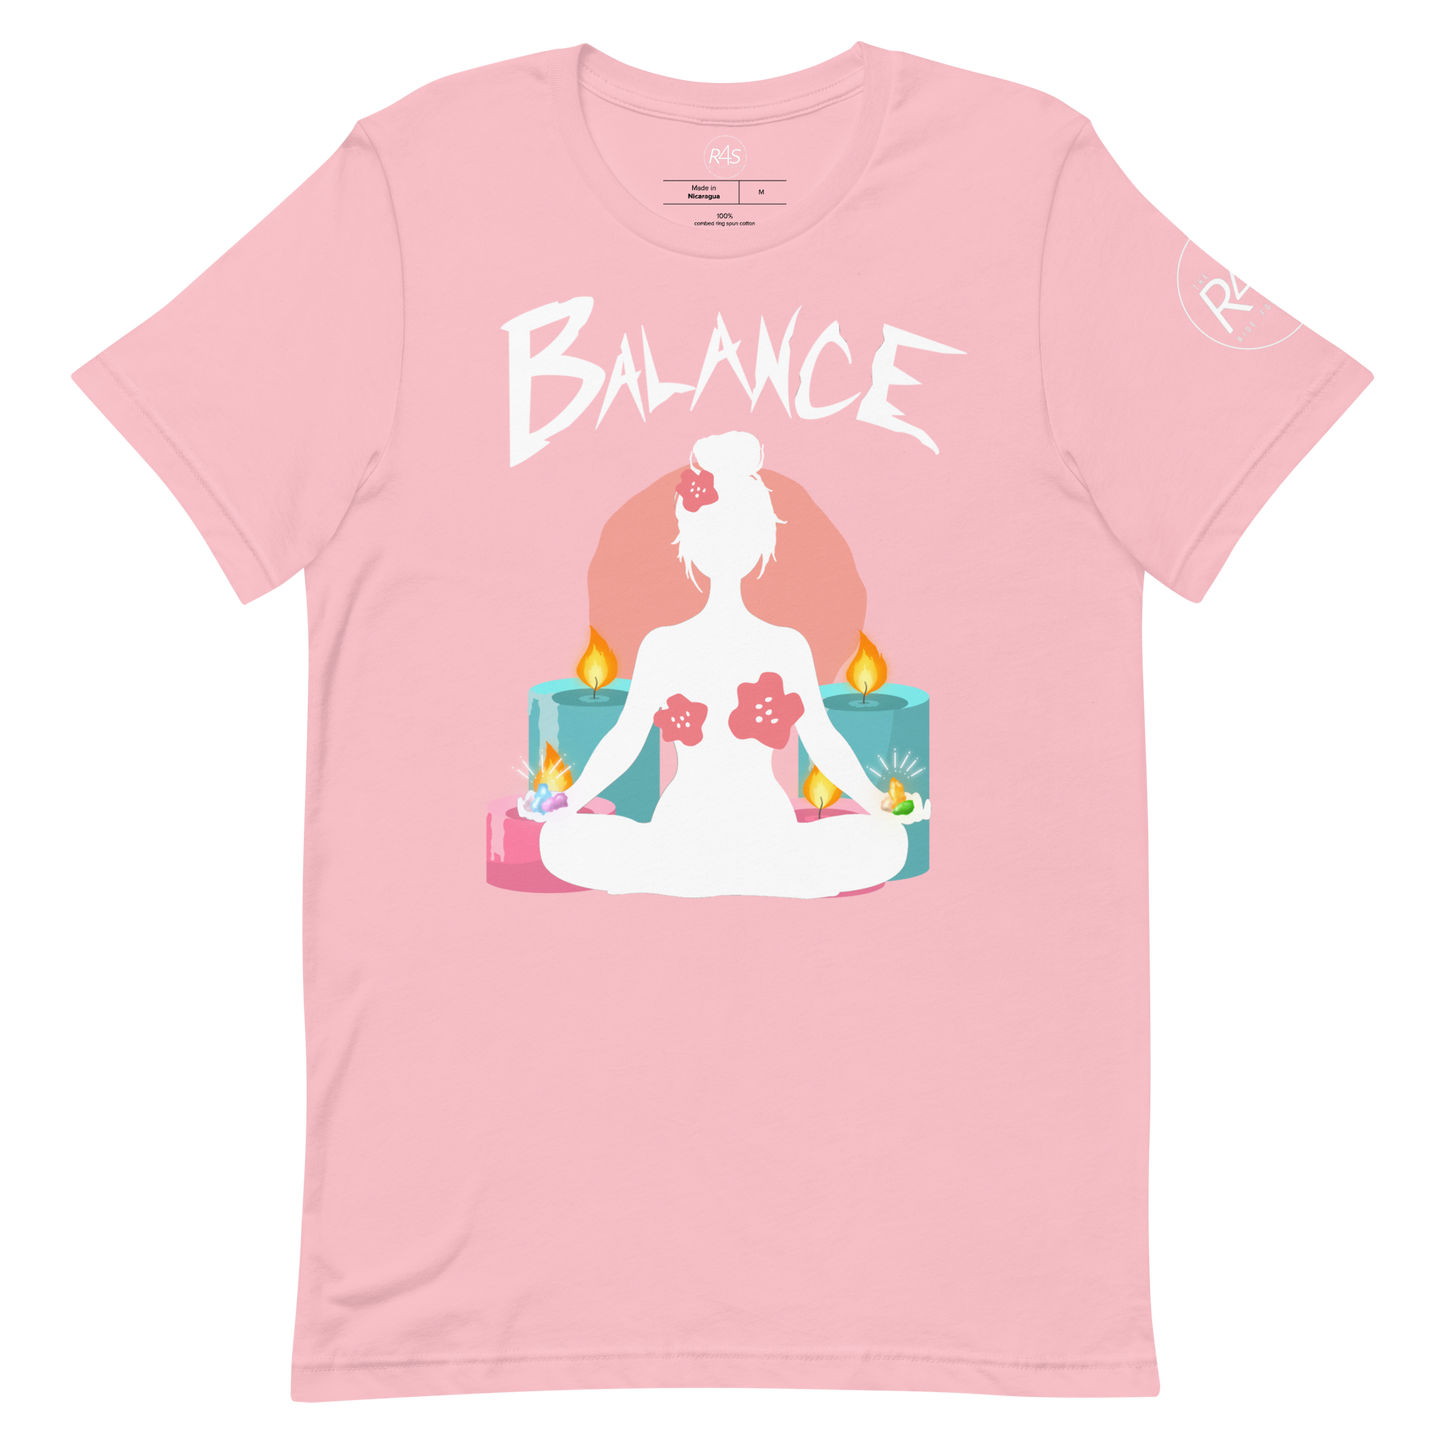 #Balance Yoga Unisex t-shirt